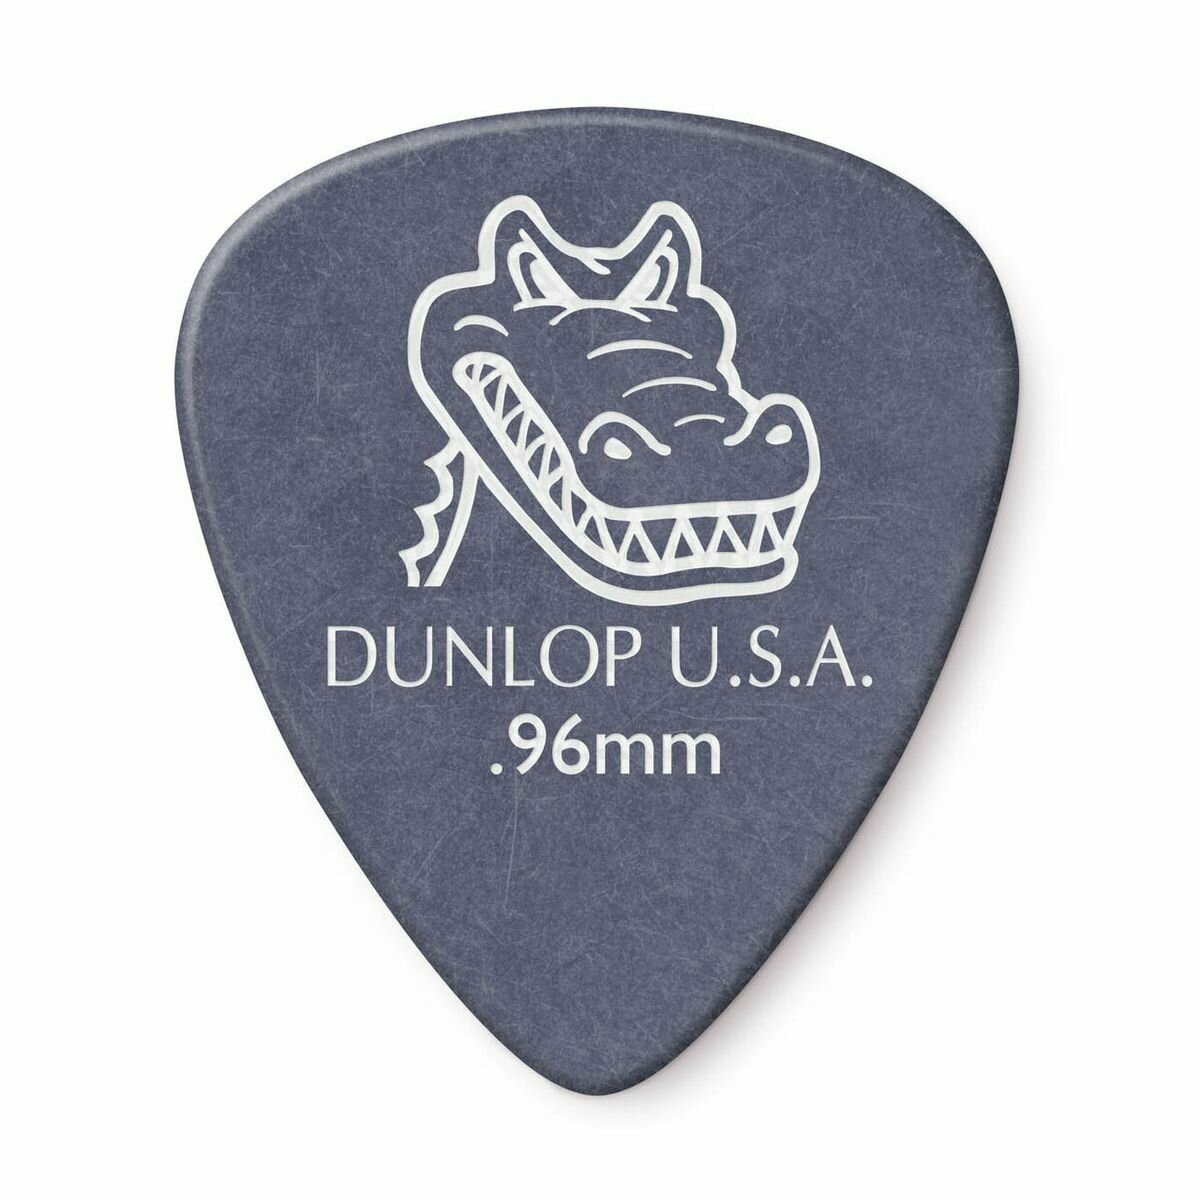 Dunlop 417P096 Gator Grip Standard 12Pack